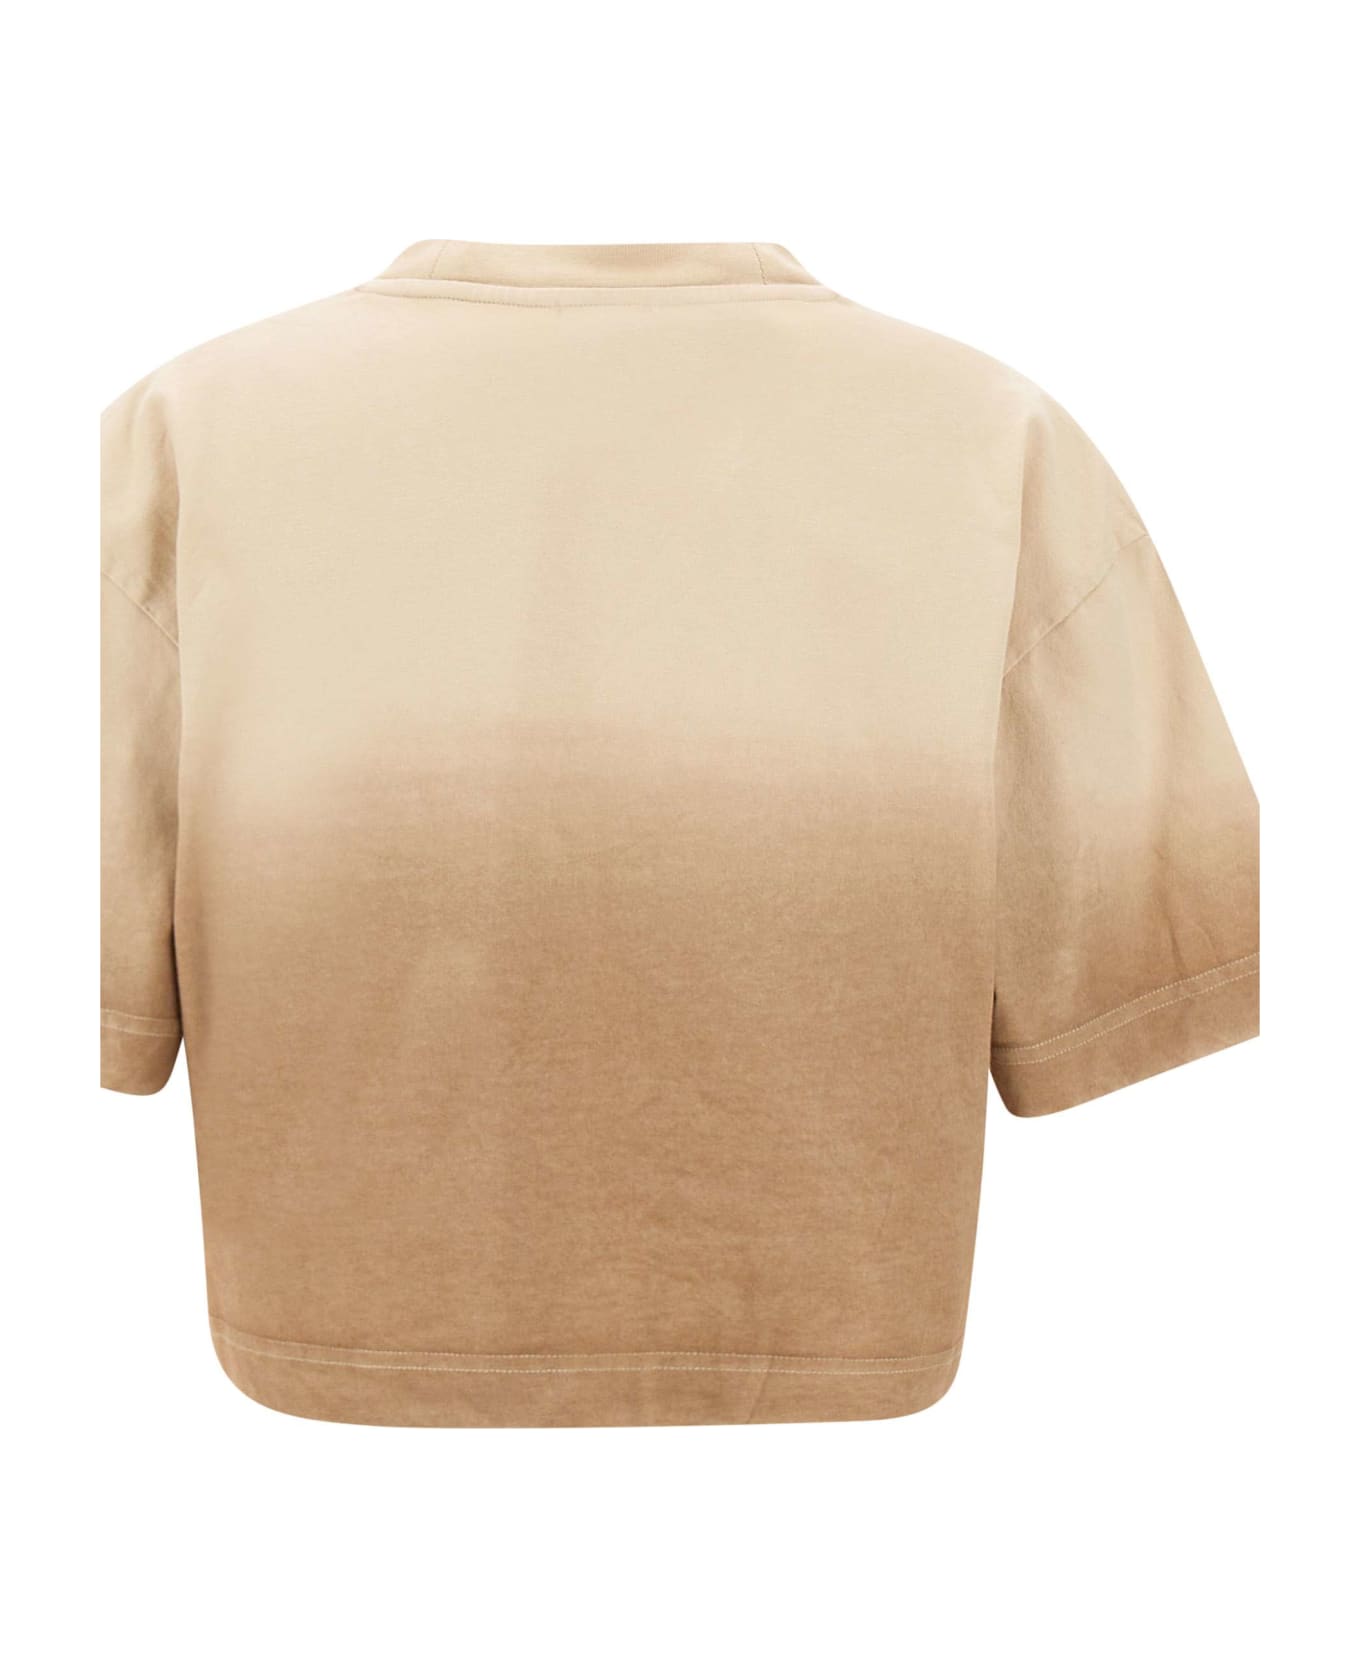 Woolrich 'dip Dye' Cotton T-shirt - BEIGE